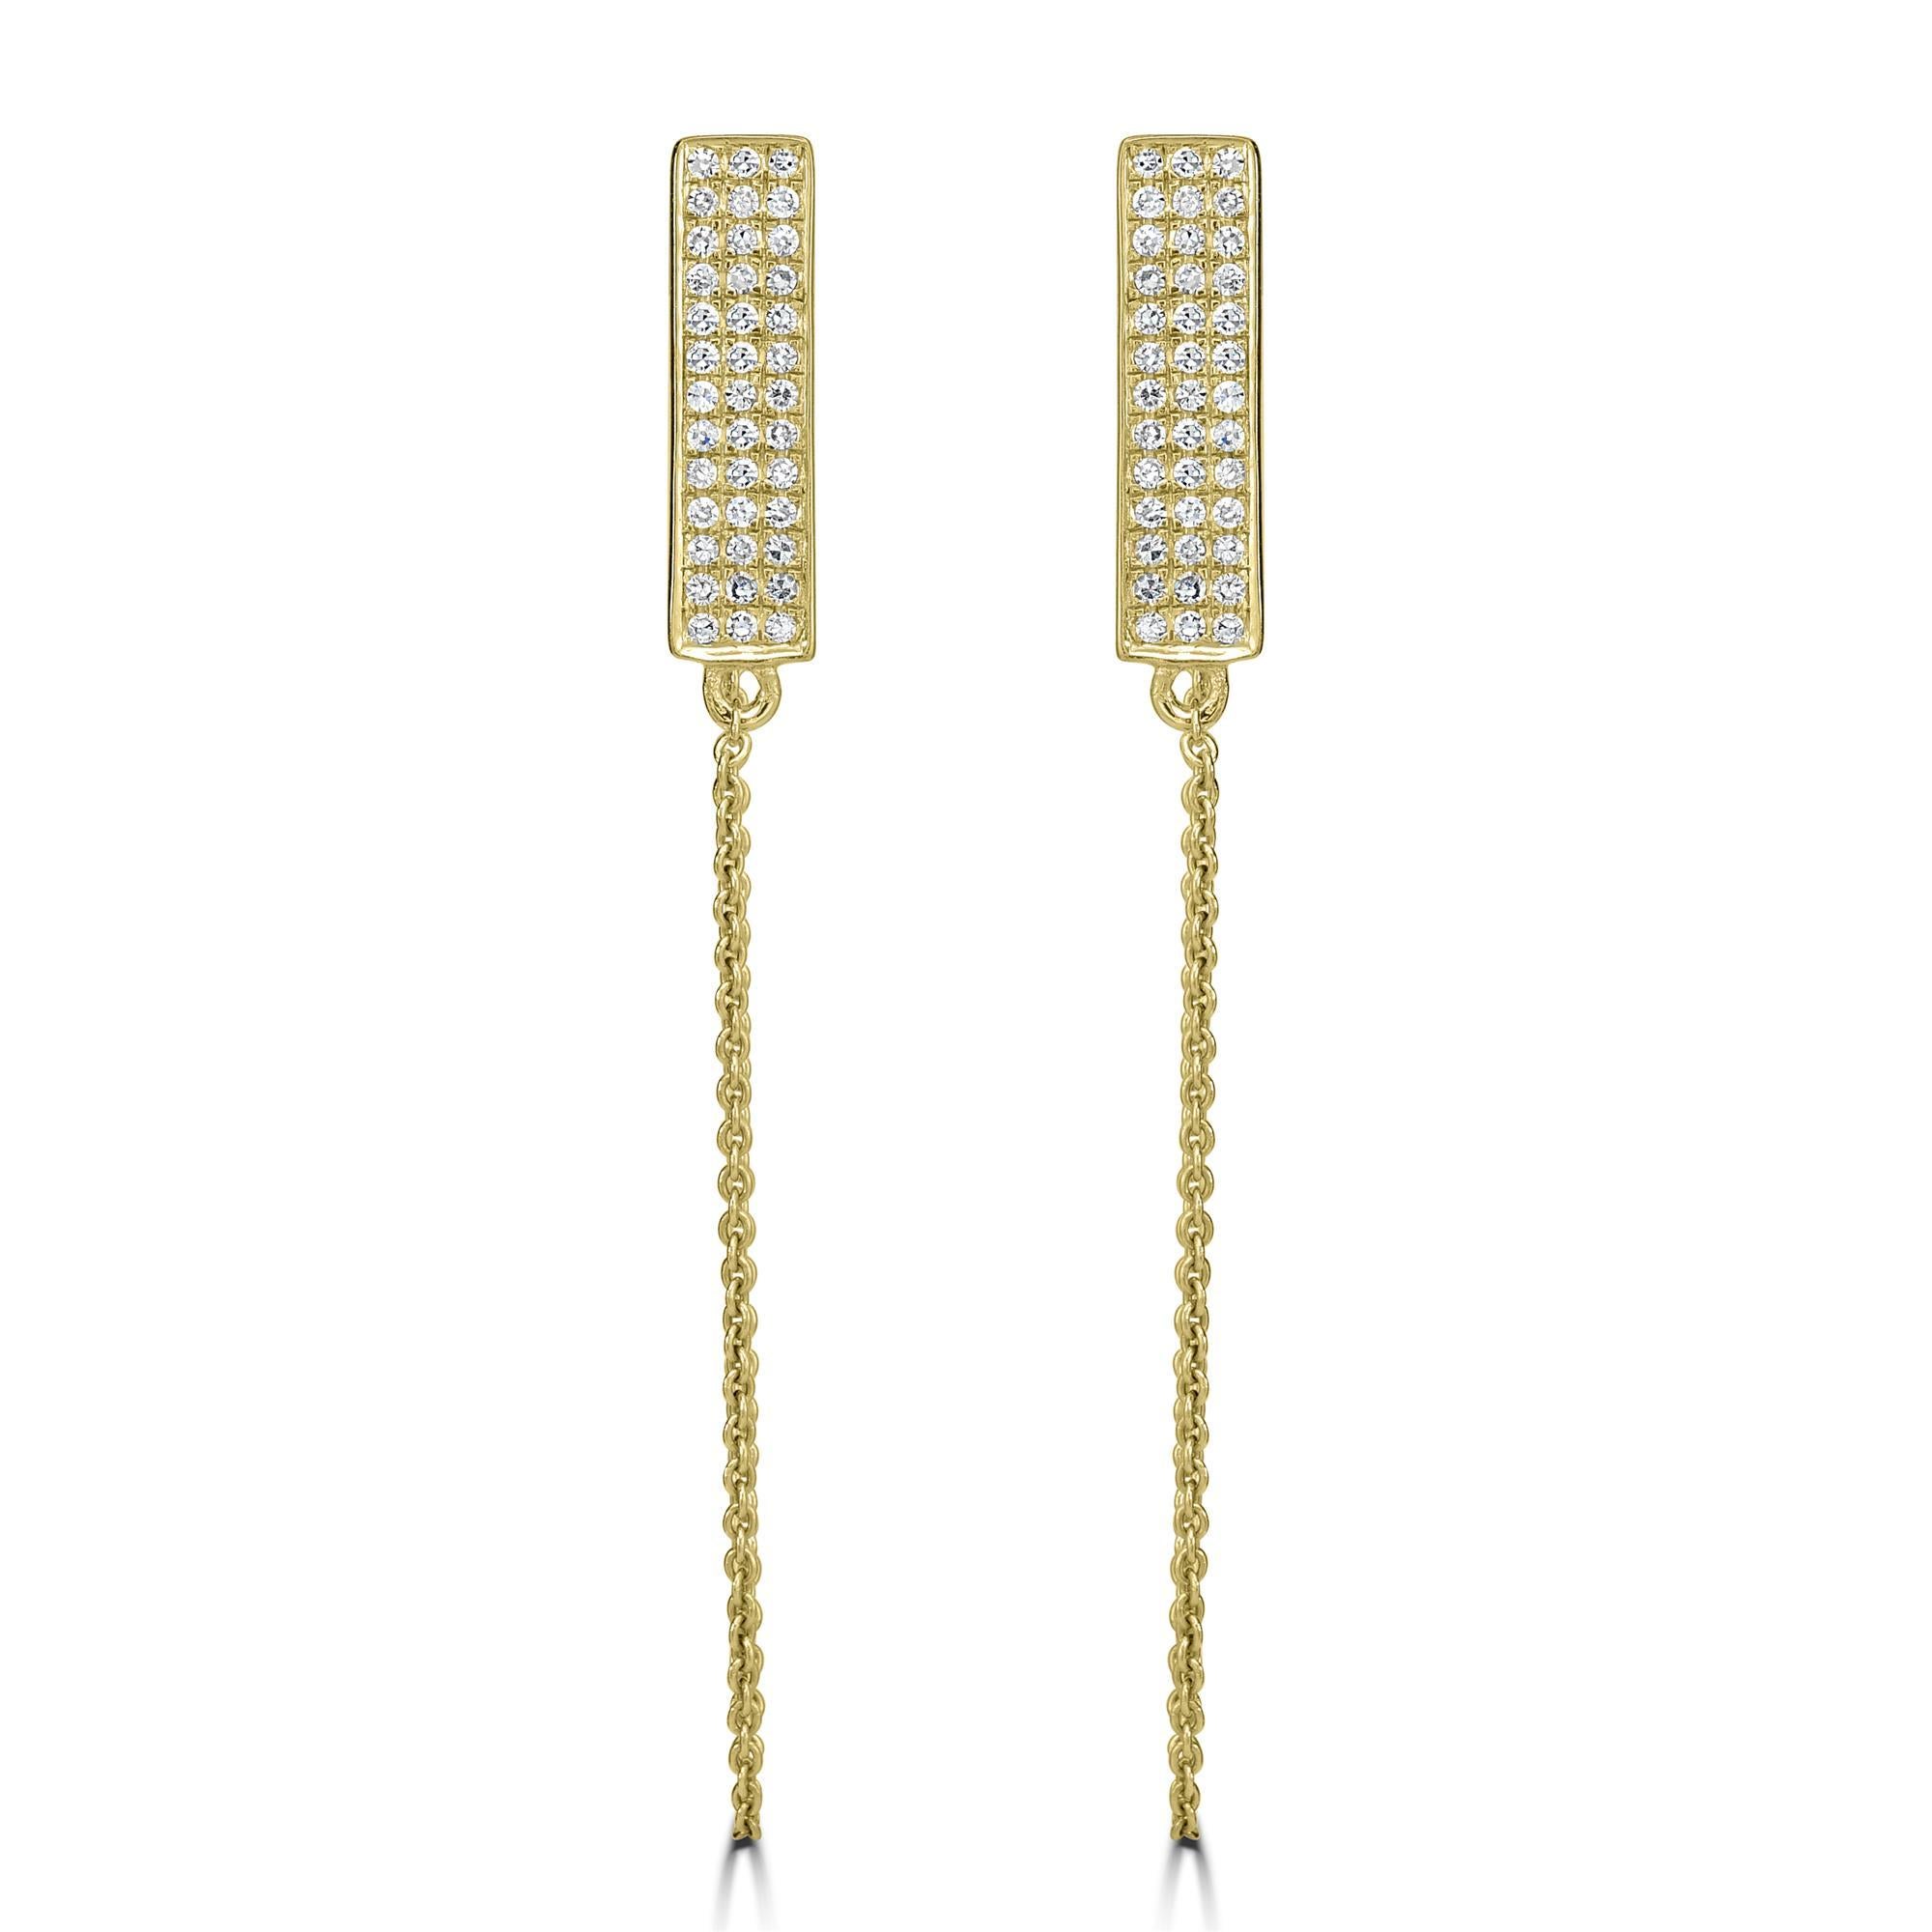 Diese Luxle Round Diamond Threader Drop Earrings sind minimalistisch und doch so modisch. Gefertigt aus glänzendem 14-karätigem Gelbgold, besetzt mit 78 runden Diamanten von insgesamt 0,21 Karat in rechteckigen Motiven an der Oberseite, die mit